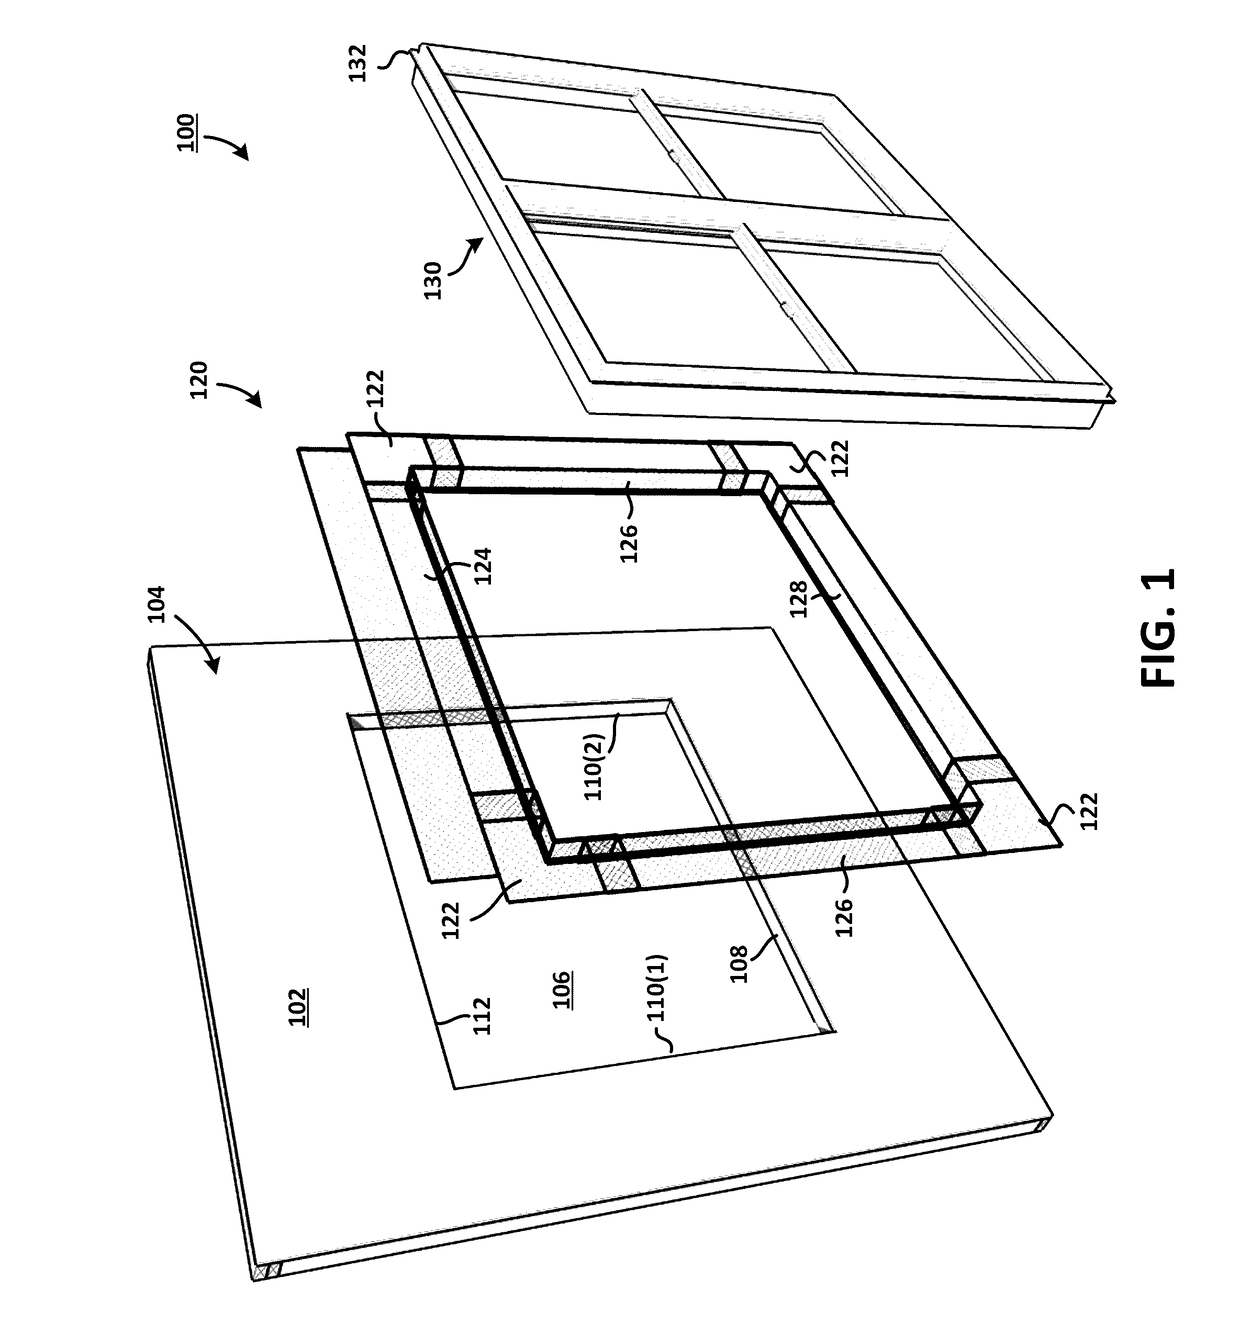 Three-Dimensional Prefabricated Flashing Scaffolding System